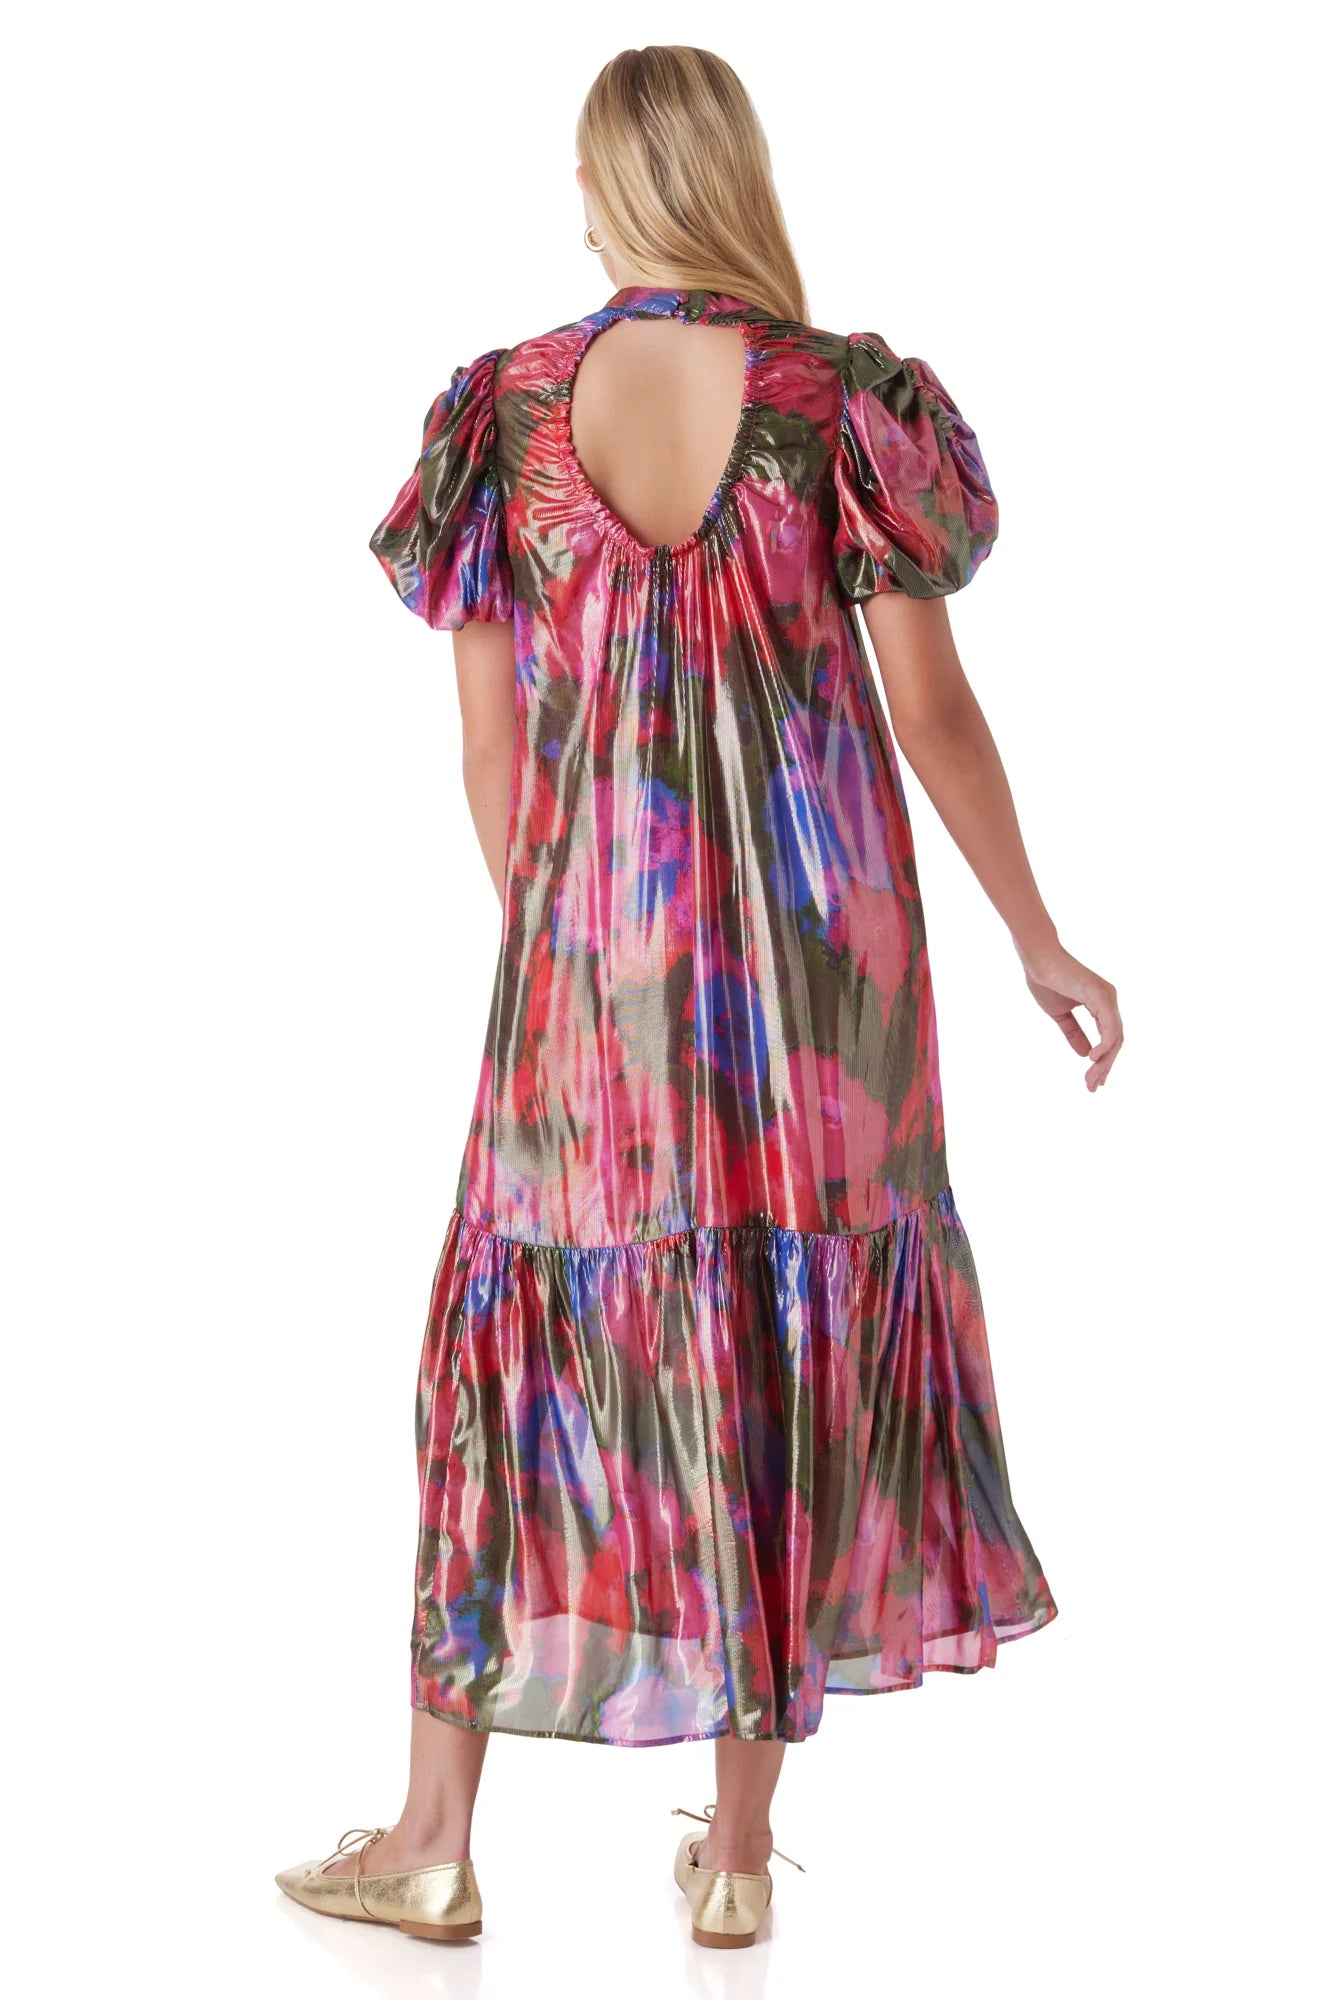 Loretta Dress - Blurred Floral Bright